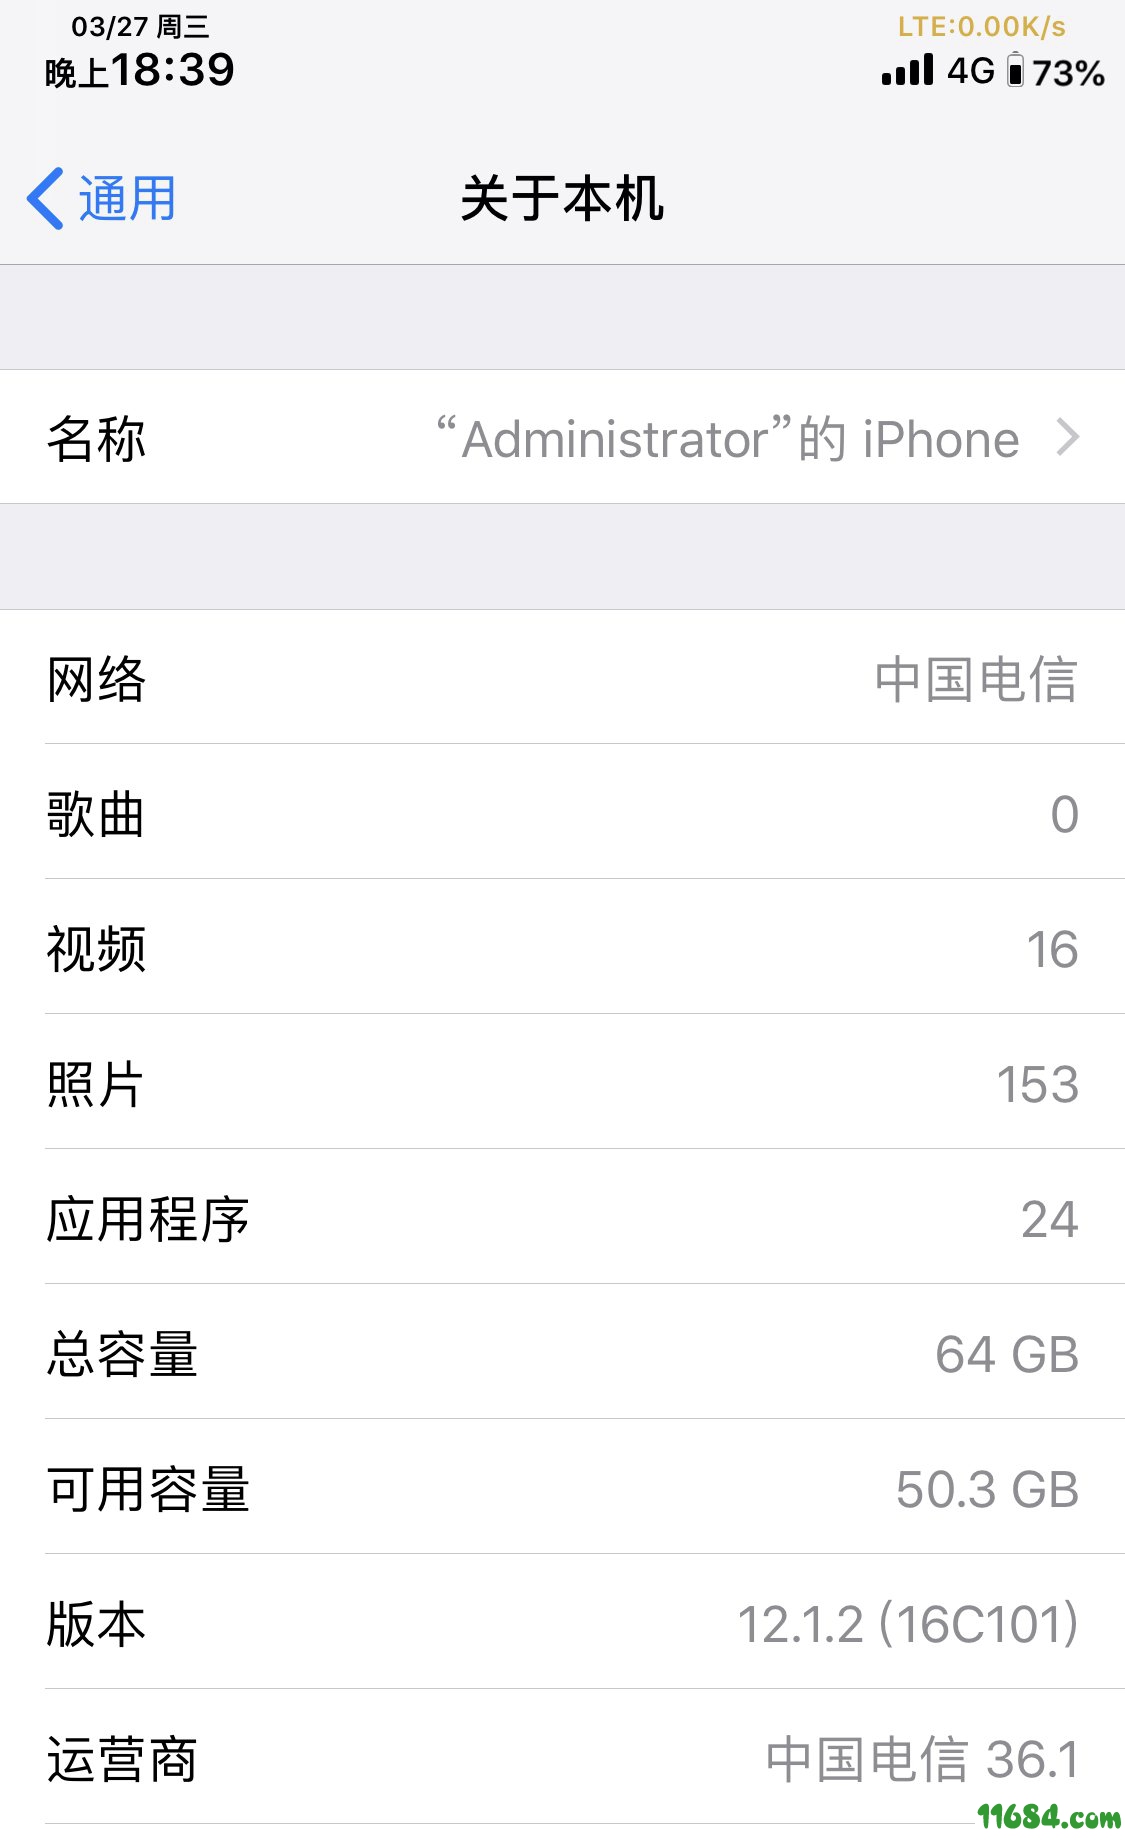 已越狱手机通过itune升级中国电信Volte36.1下载